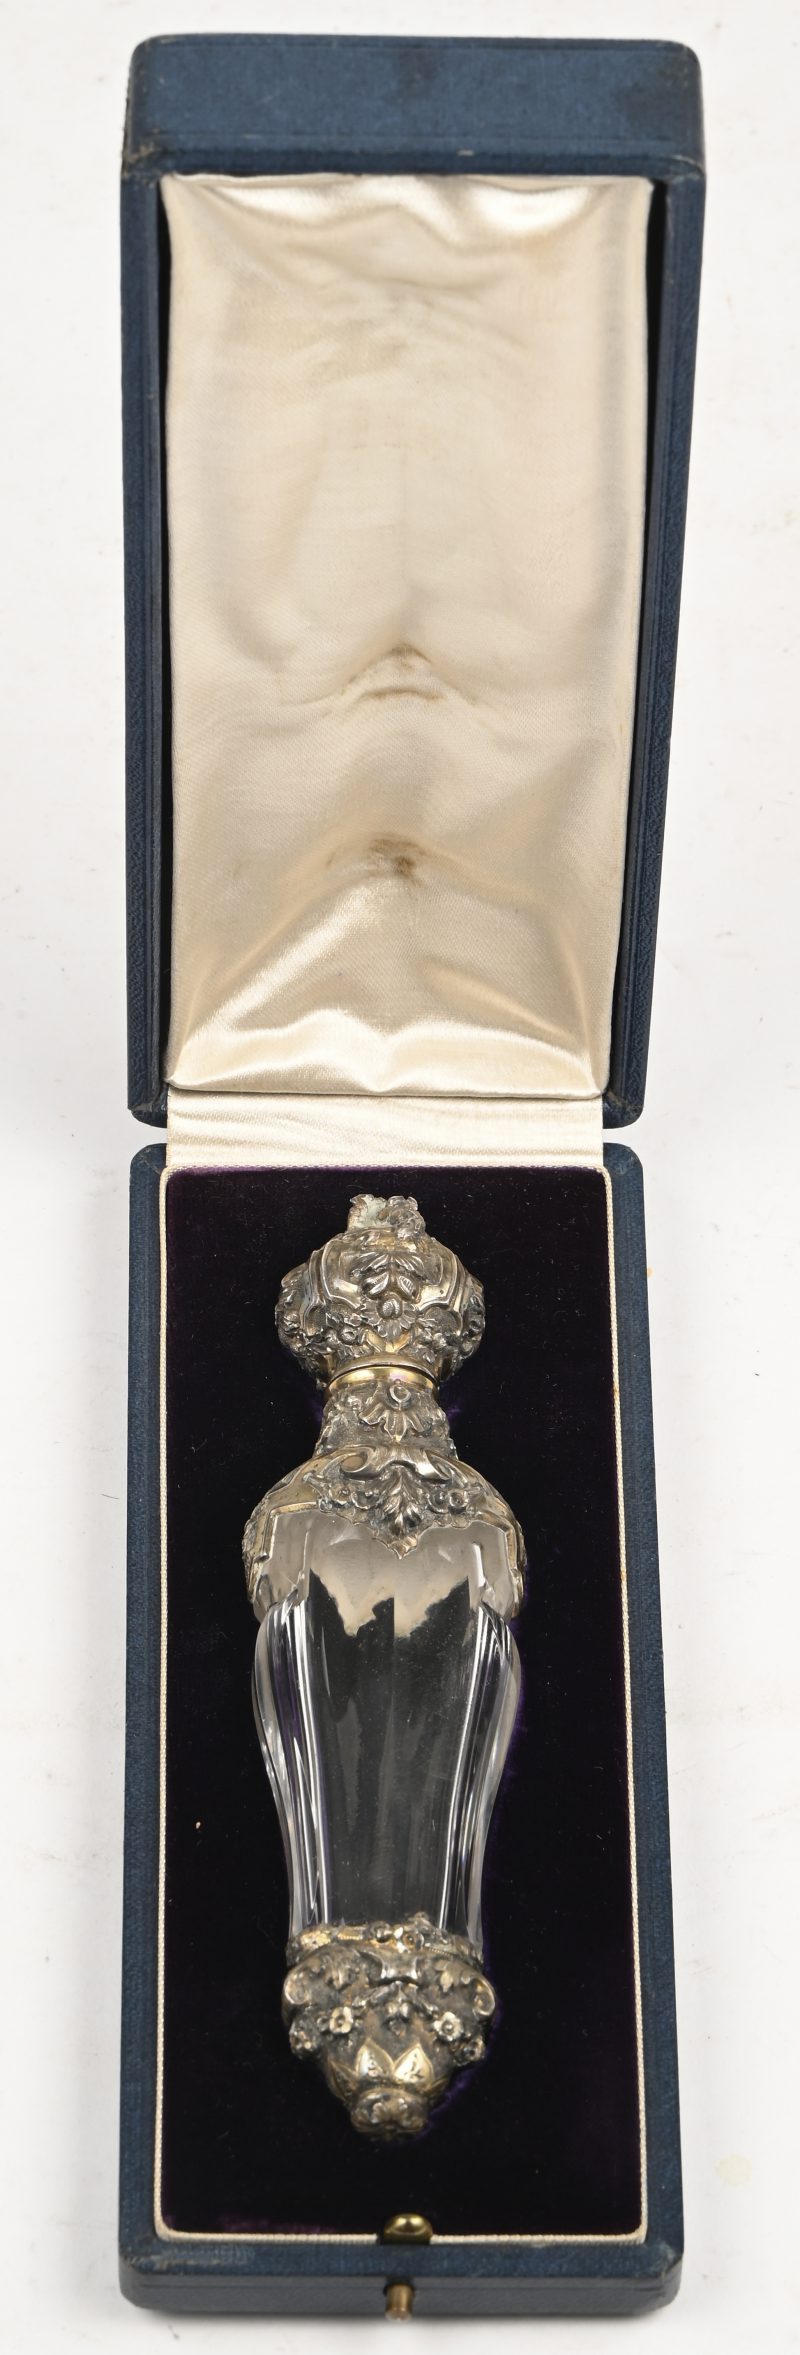 Een laat 18e eeuwse parfumflacon met verzilverde delen in zijn originele etui.